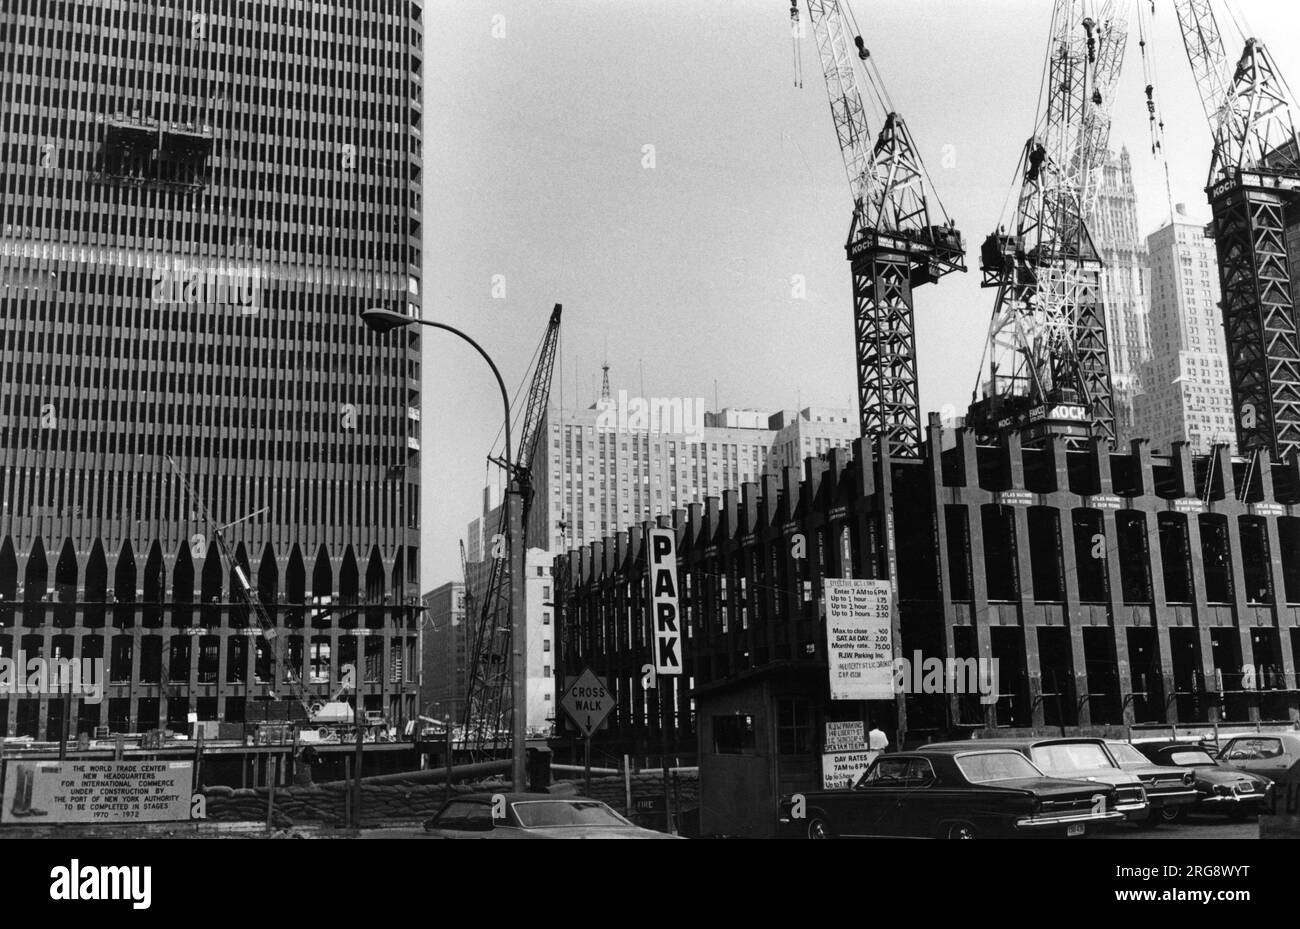 La construction de la deuxième des tours jumelles du World Trade Center, qui a pris 7 ans à construire et a été détruite par des terroristes le 11 septembre 2001. Banque D'Images